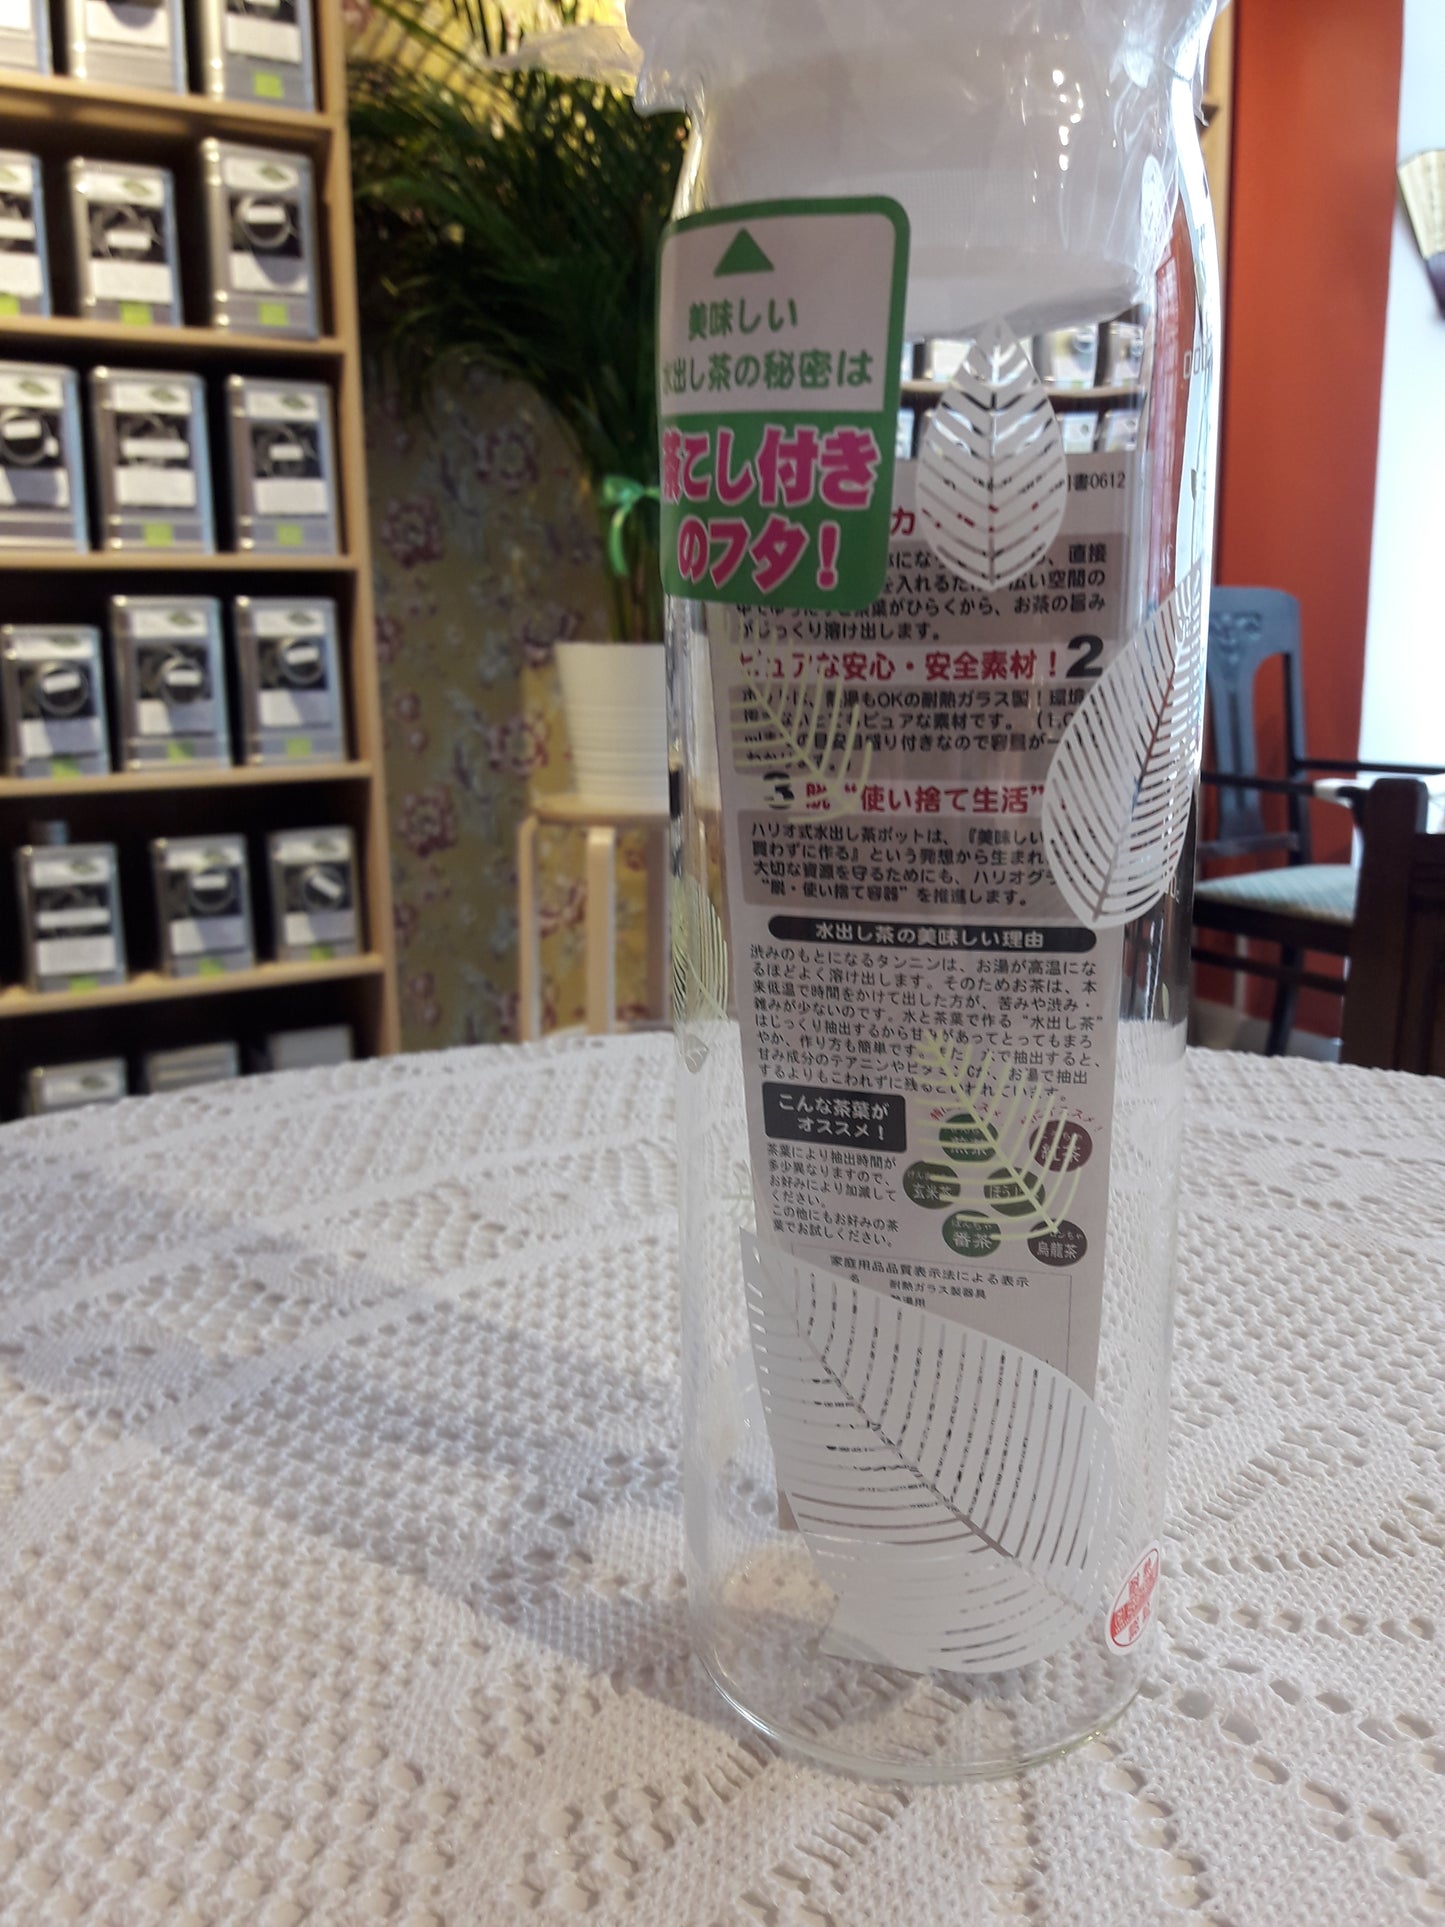 Japanese tea carafe 1 liter